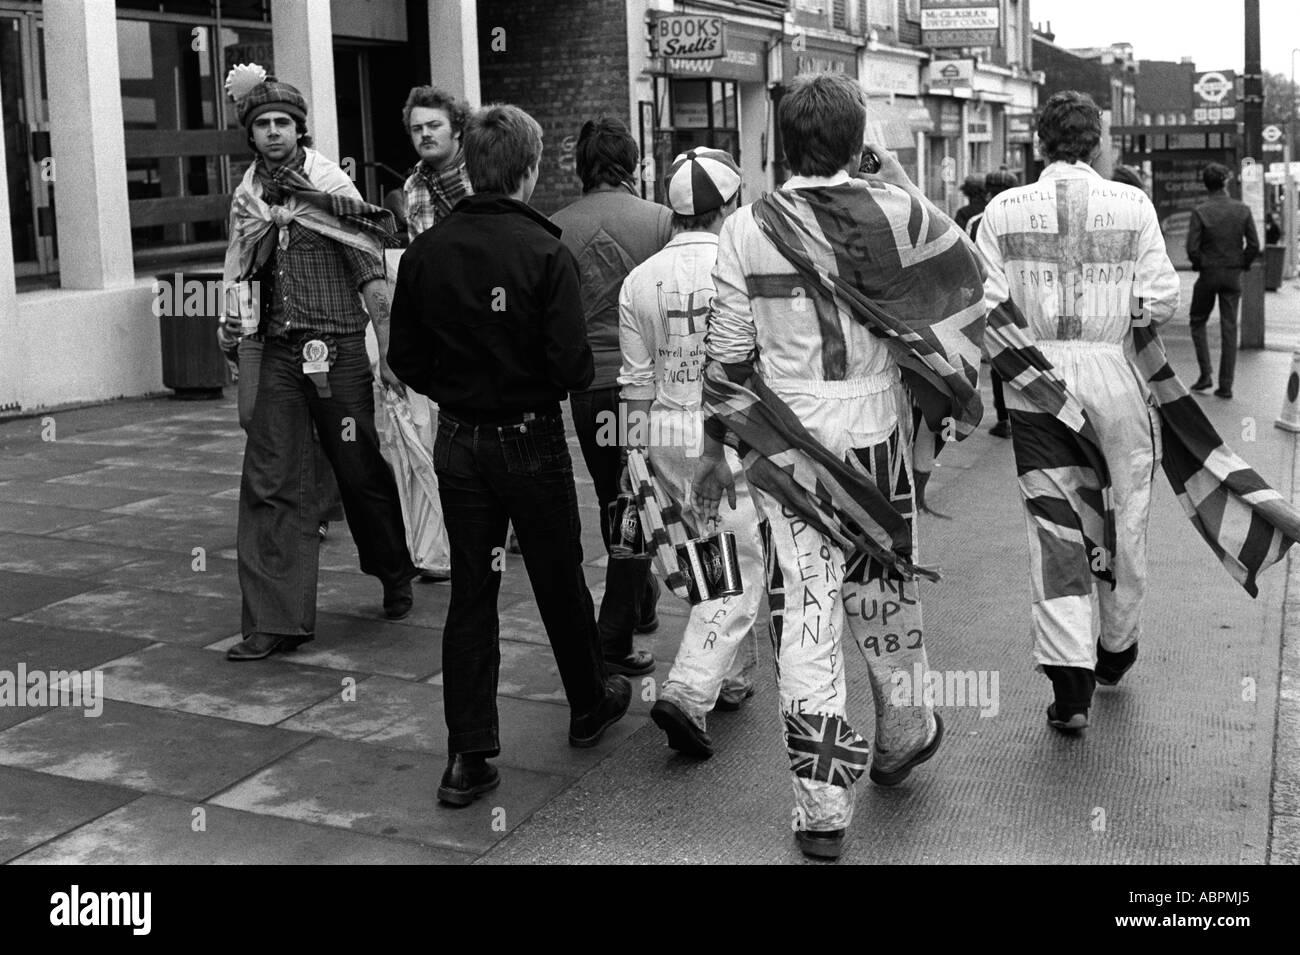 Fans de football écossais et anglais. Les fans écossais et anglais passent dans la rue avant le match. Wembley Londres Angleterre 1981 années 1980 Royaume-Uni HOMER SYKES Banque D'Images